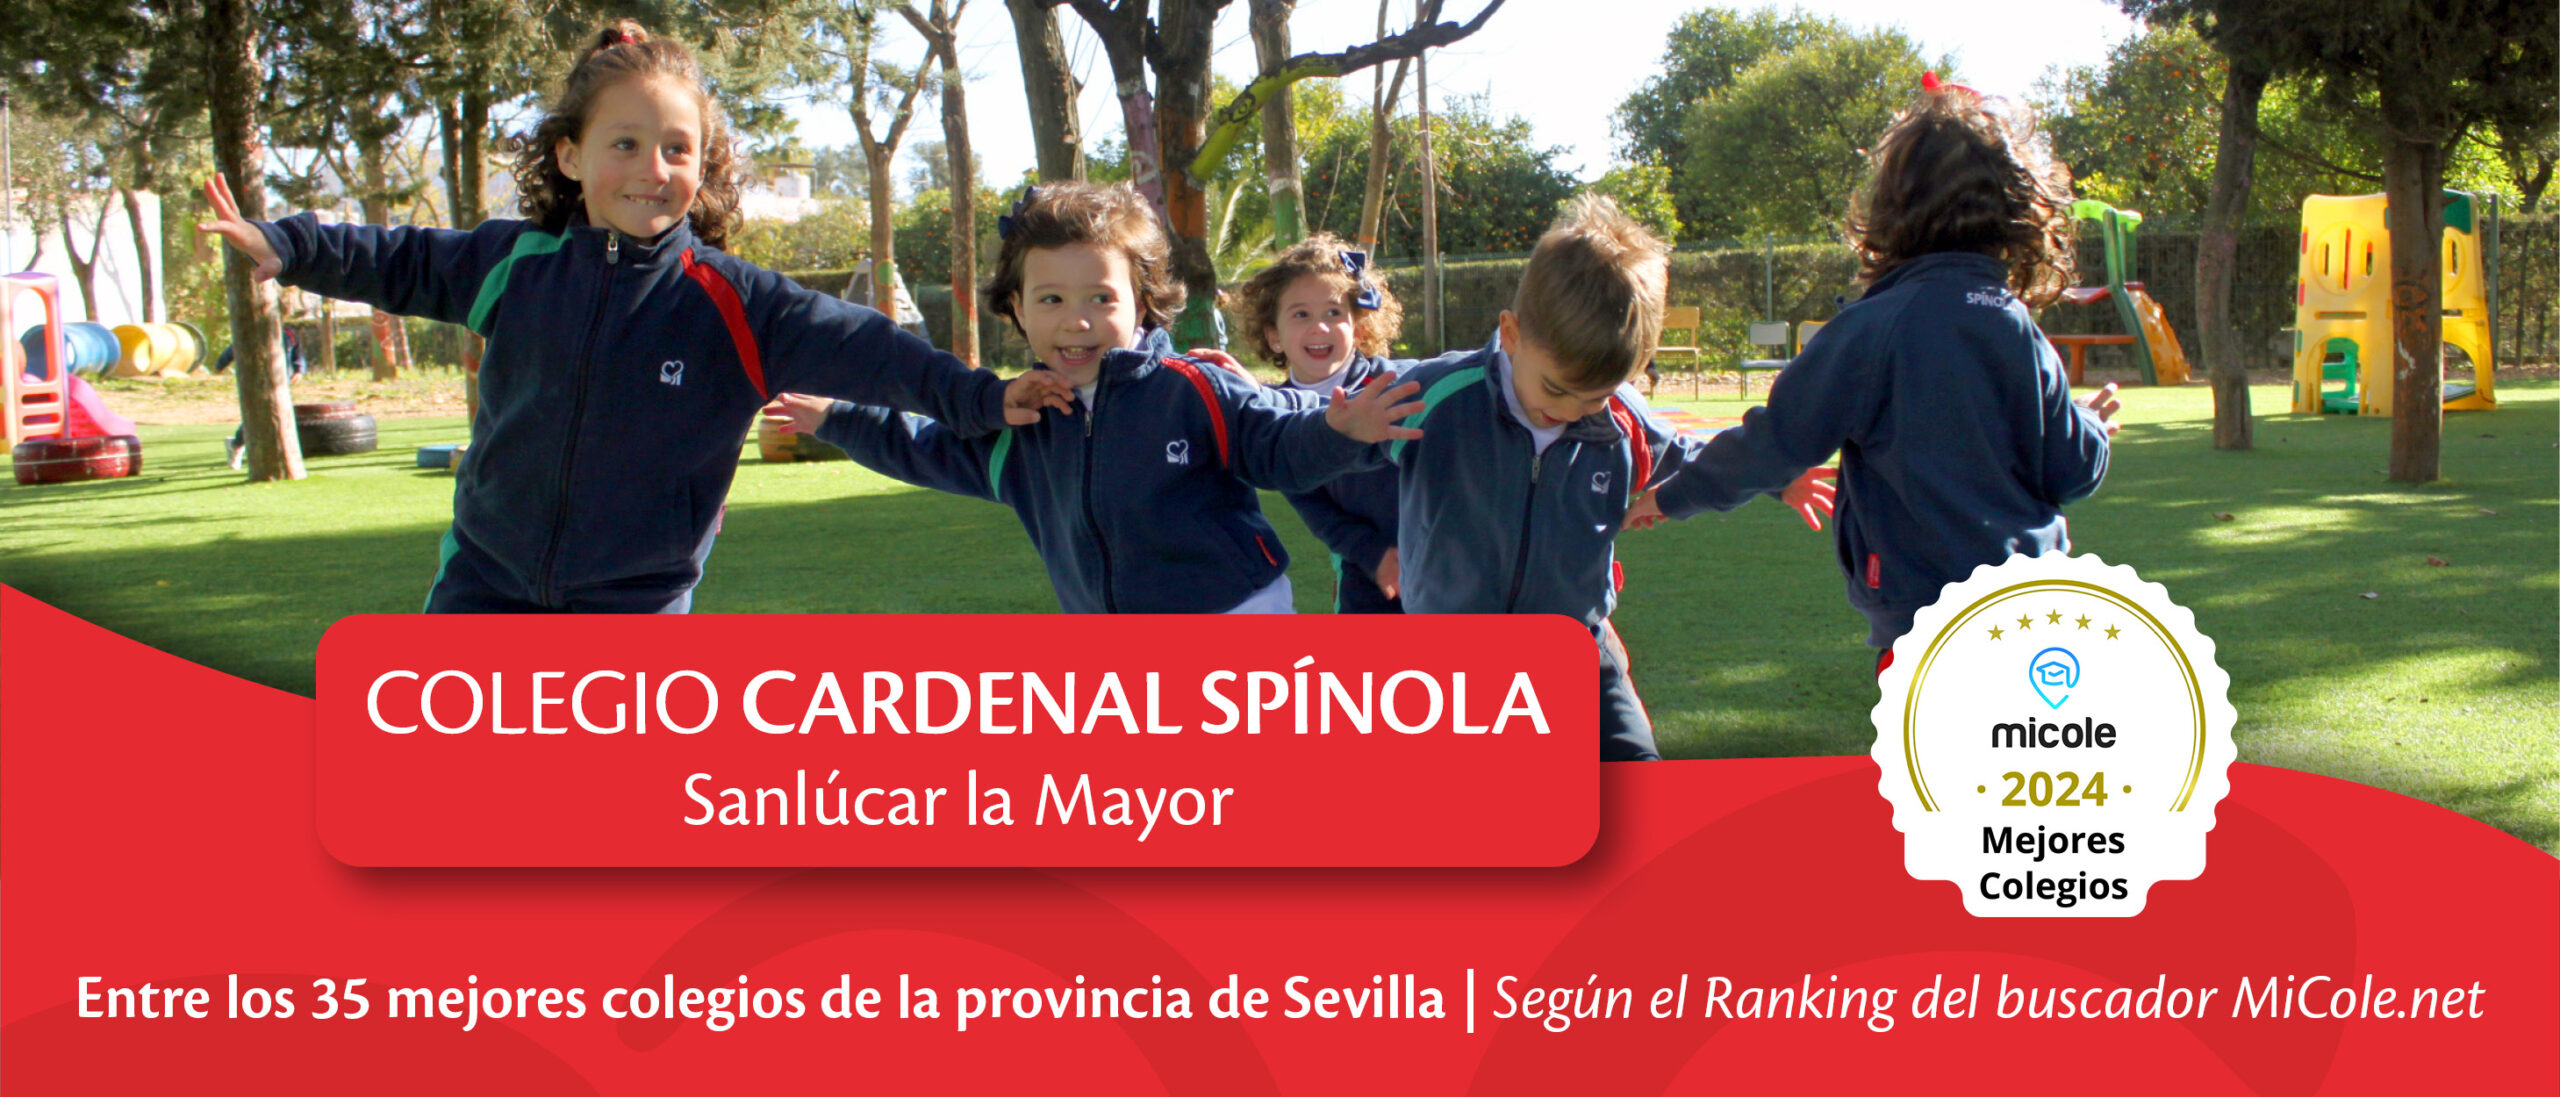 Cardenal Spínola de Sanlúcar la Mayor entre los mejores colegios de la Provincia de Sevilla